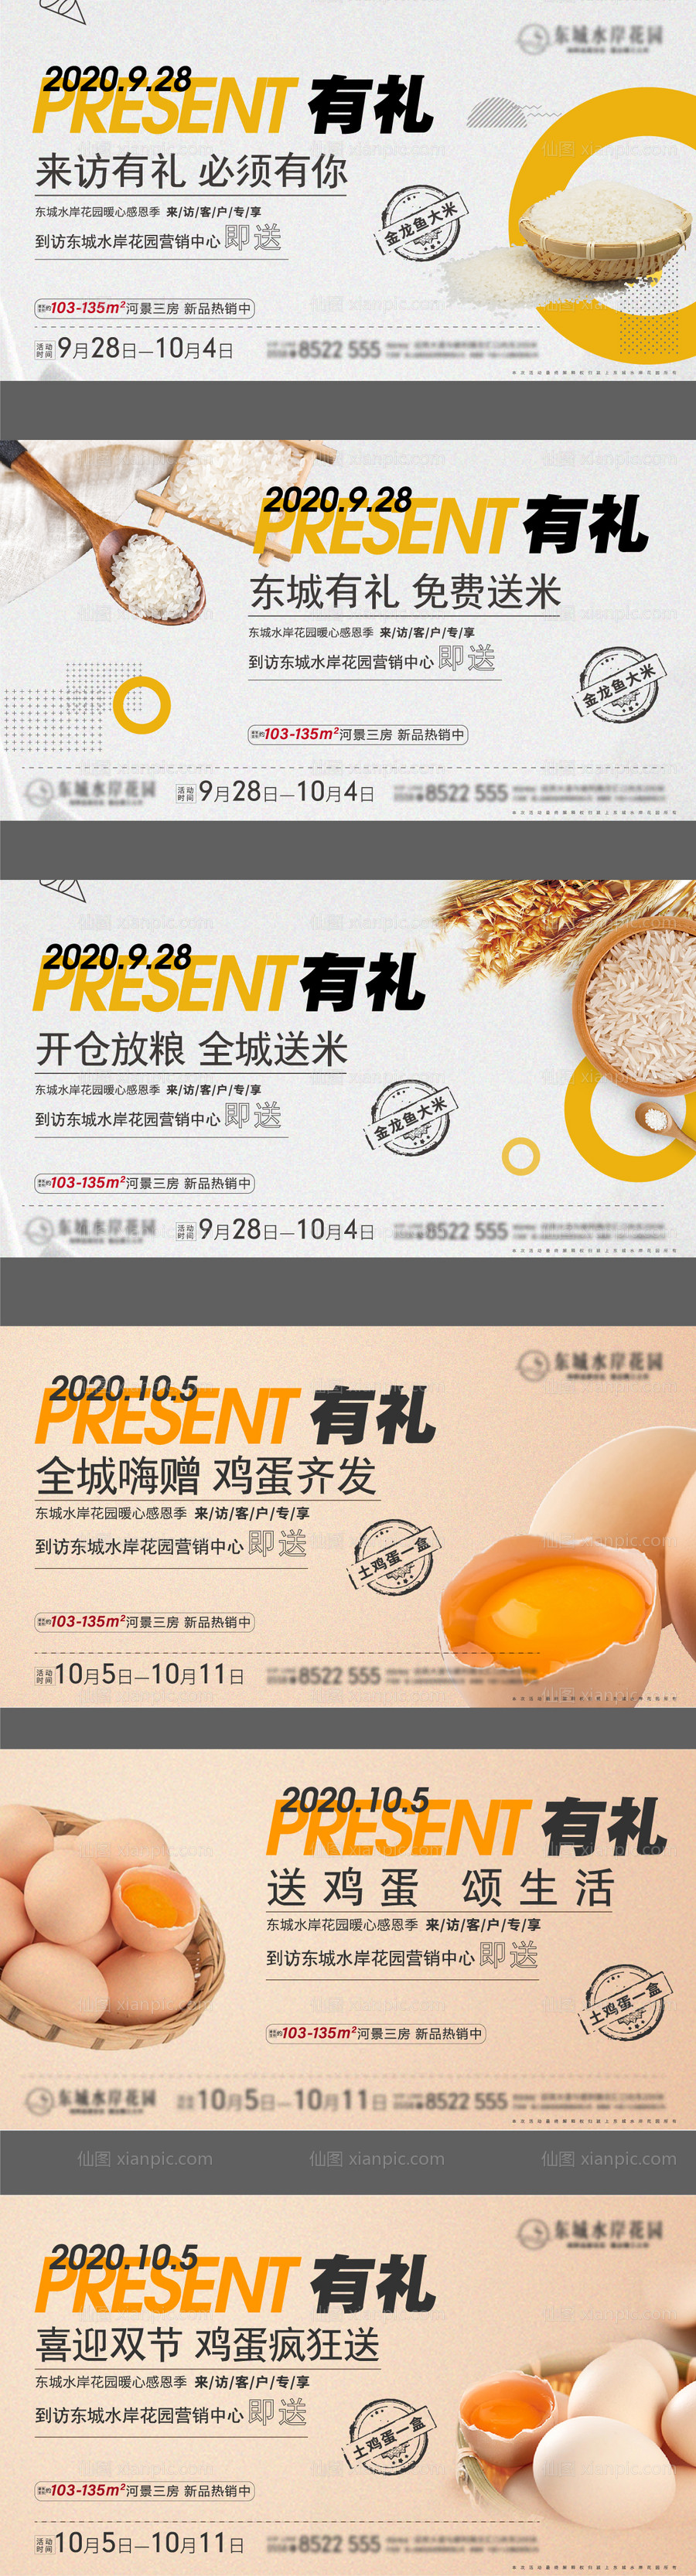 素材乐-送大米鸡蛋系列微信海报